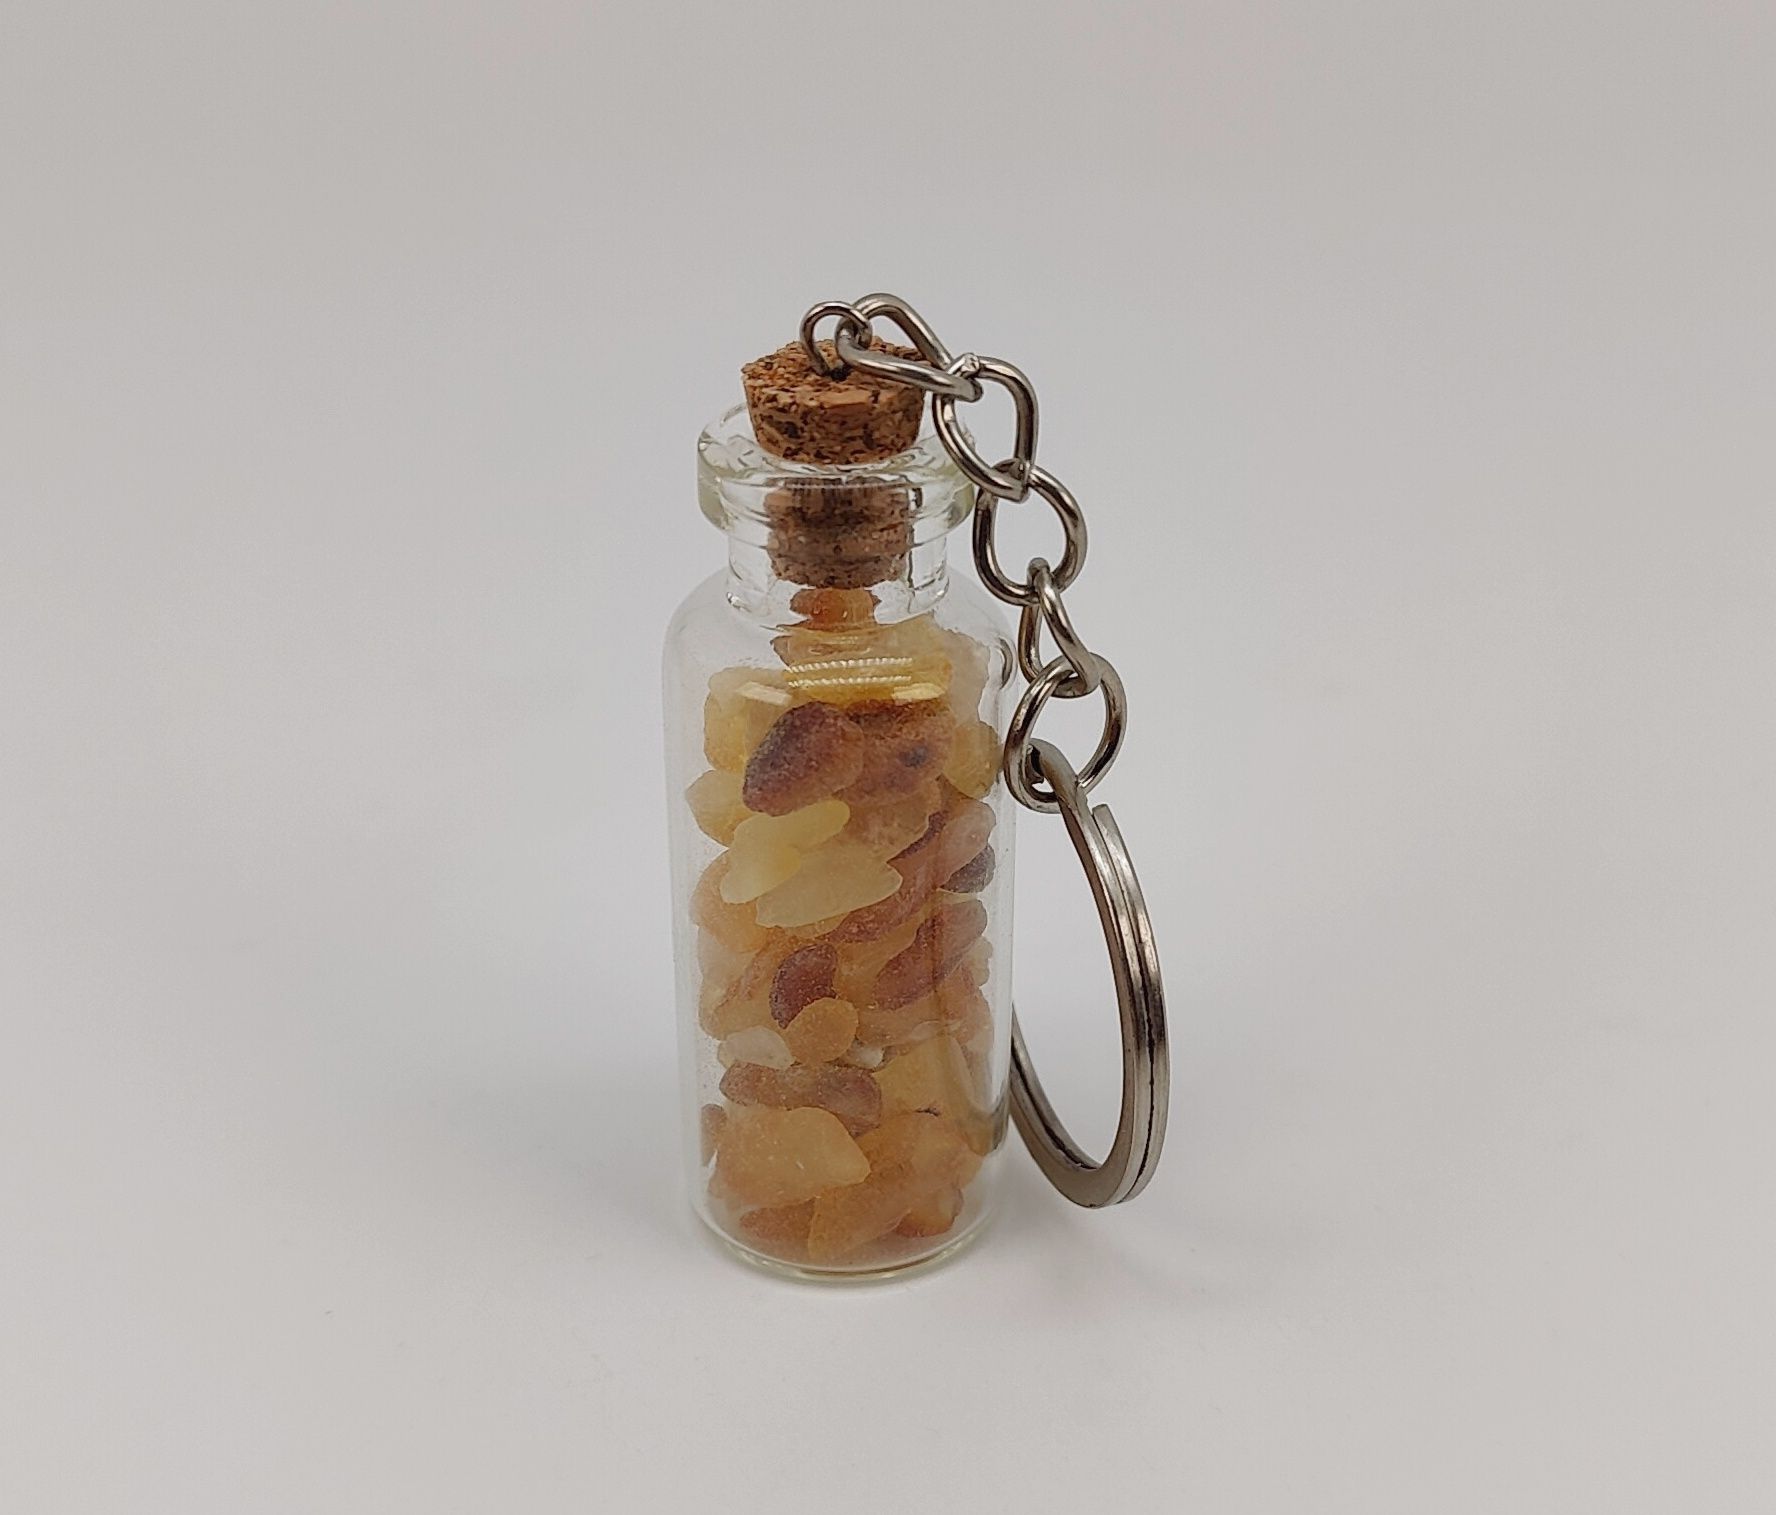 Сувенир "Бутылочка" с натуральным необработанным янтарем.